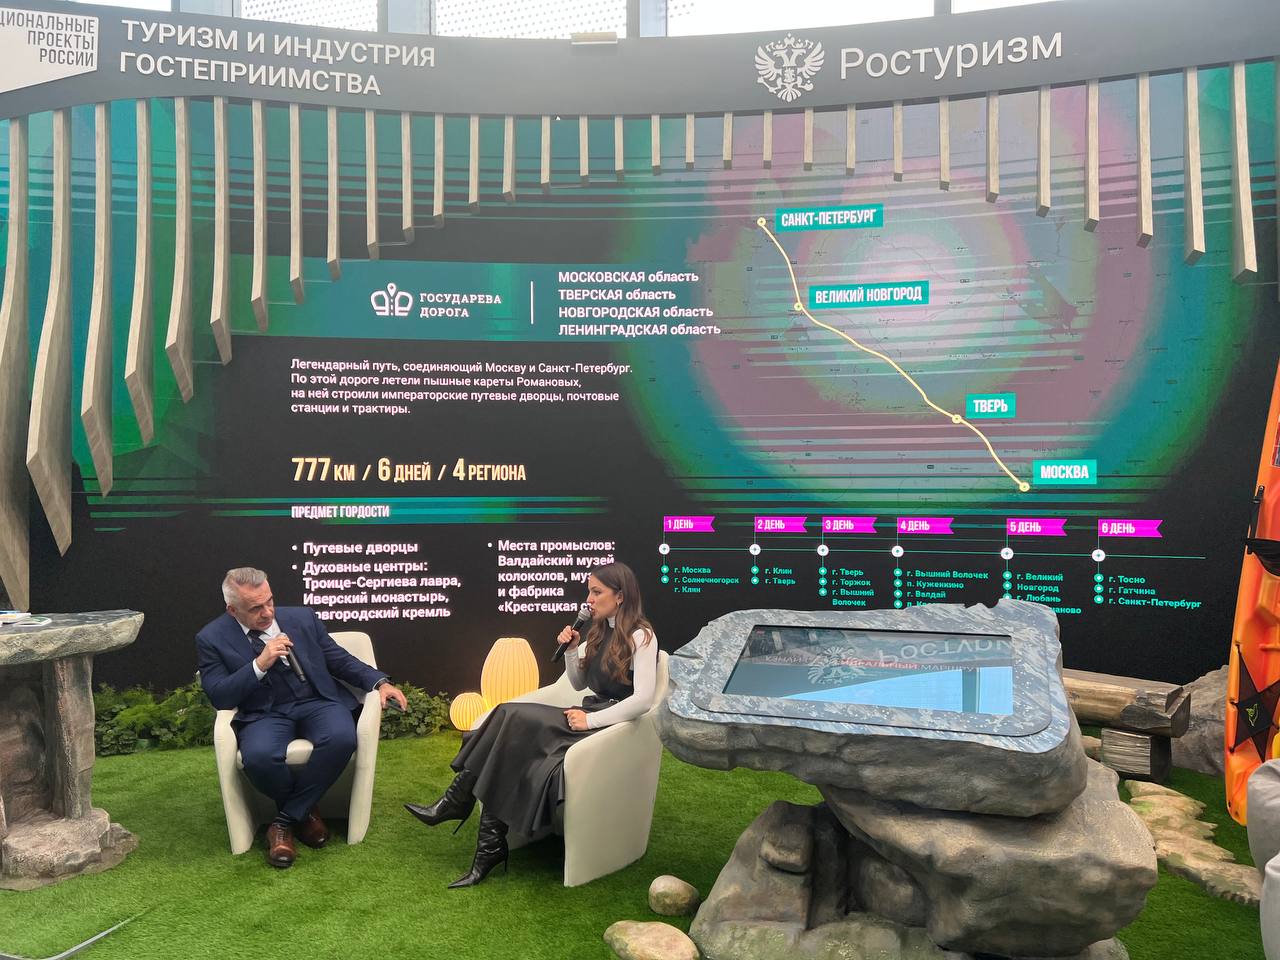 ПМЭФ-2022: На стенде Ростуризма рассказали о проходящем через Тверскую область маршруте «Государева дорога»